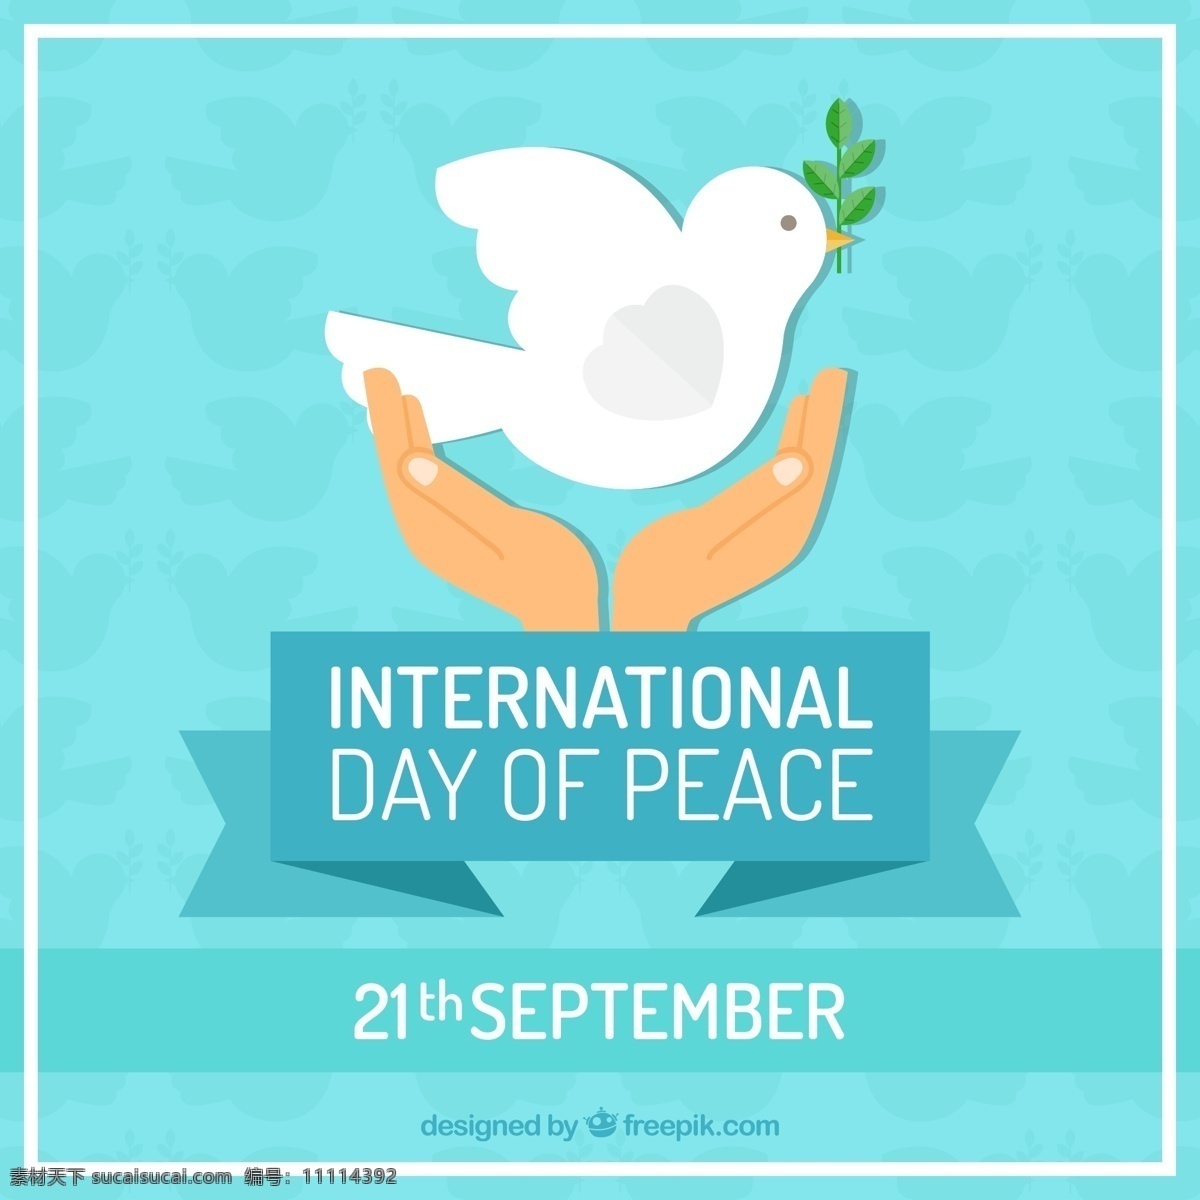 创意 国际 平日 手 捧 白鸽 插画 和平 公益 图标 商标